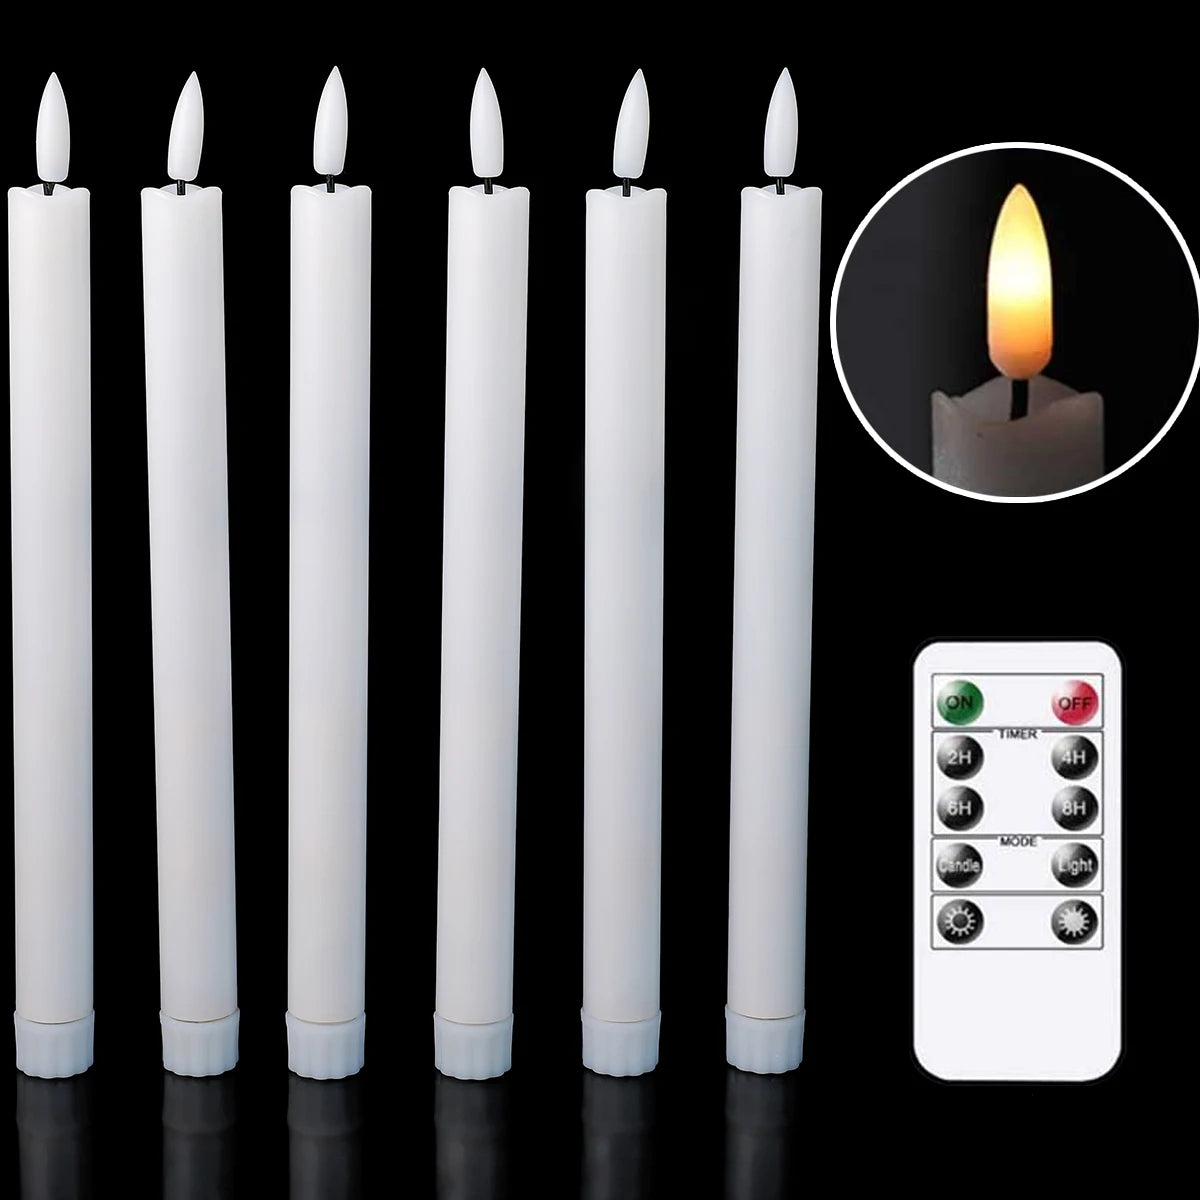 2 fekete láng nélküli 6,5 hüvelykes/16,5 cm -es rövid LED kúpos gyertya Halloween, akkumulátorral működtetett fehér/bézs LED gyertya csomagja